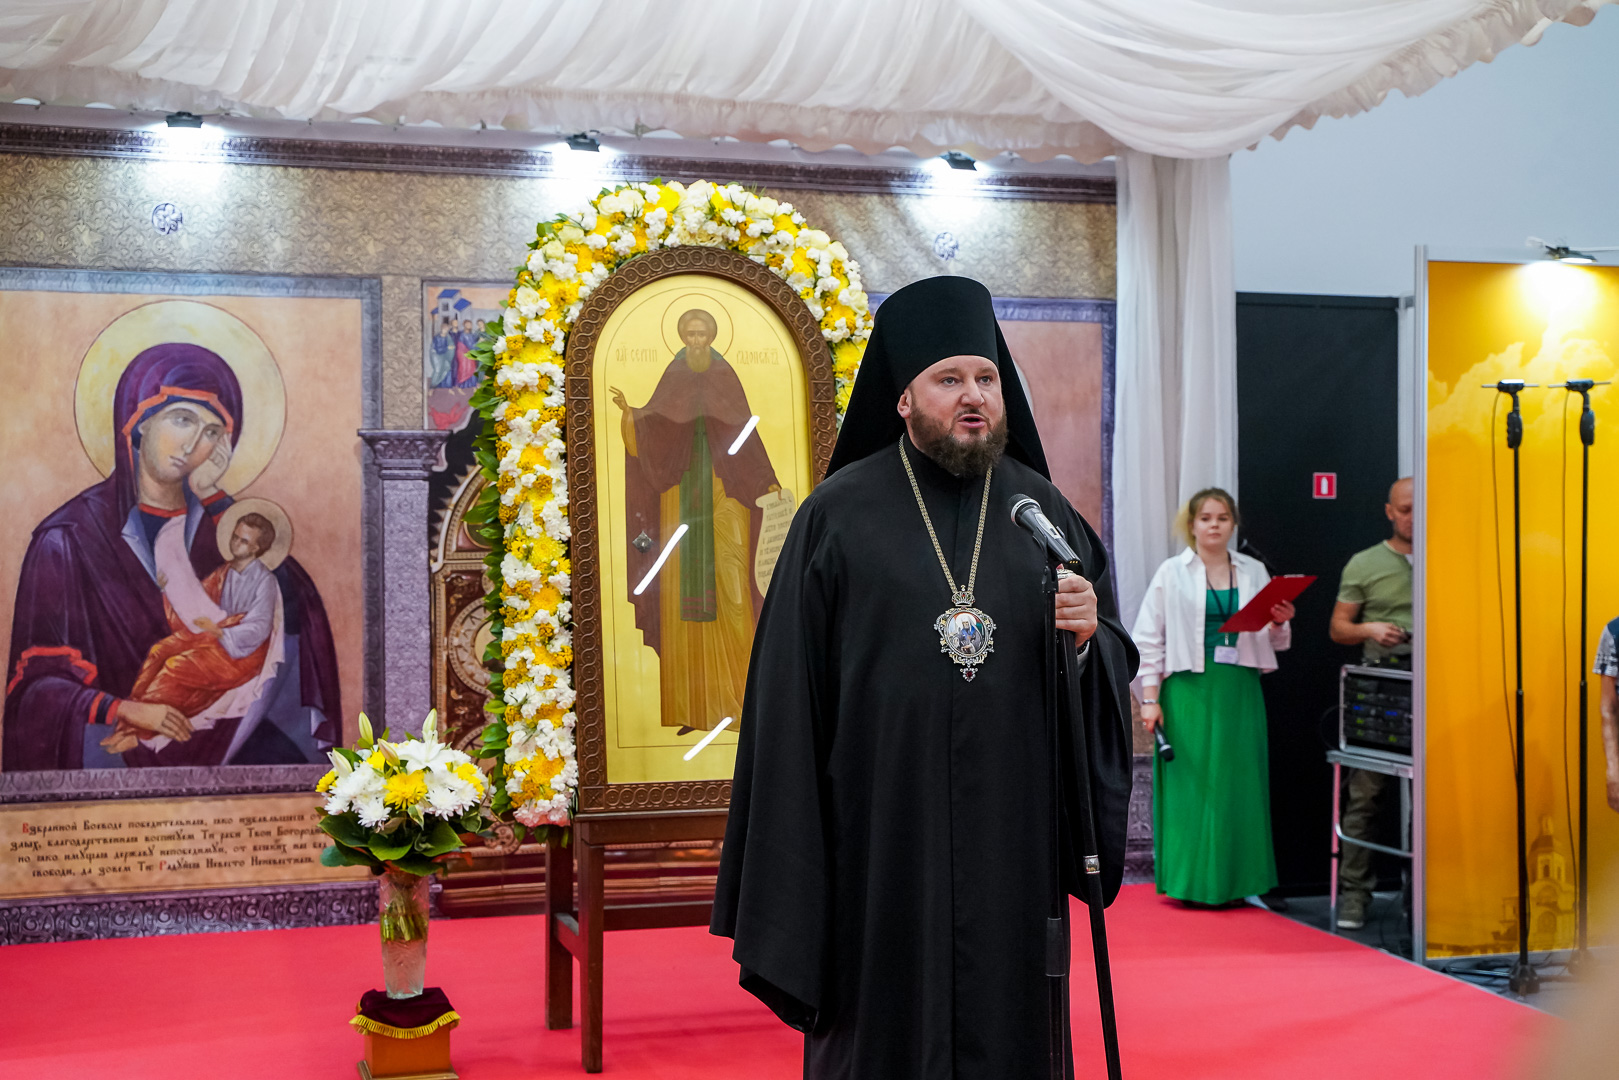 Где проходит ярмарка православная в нижнем новгороде. Православная ярмарка в Нижнем Новгороде.